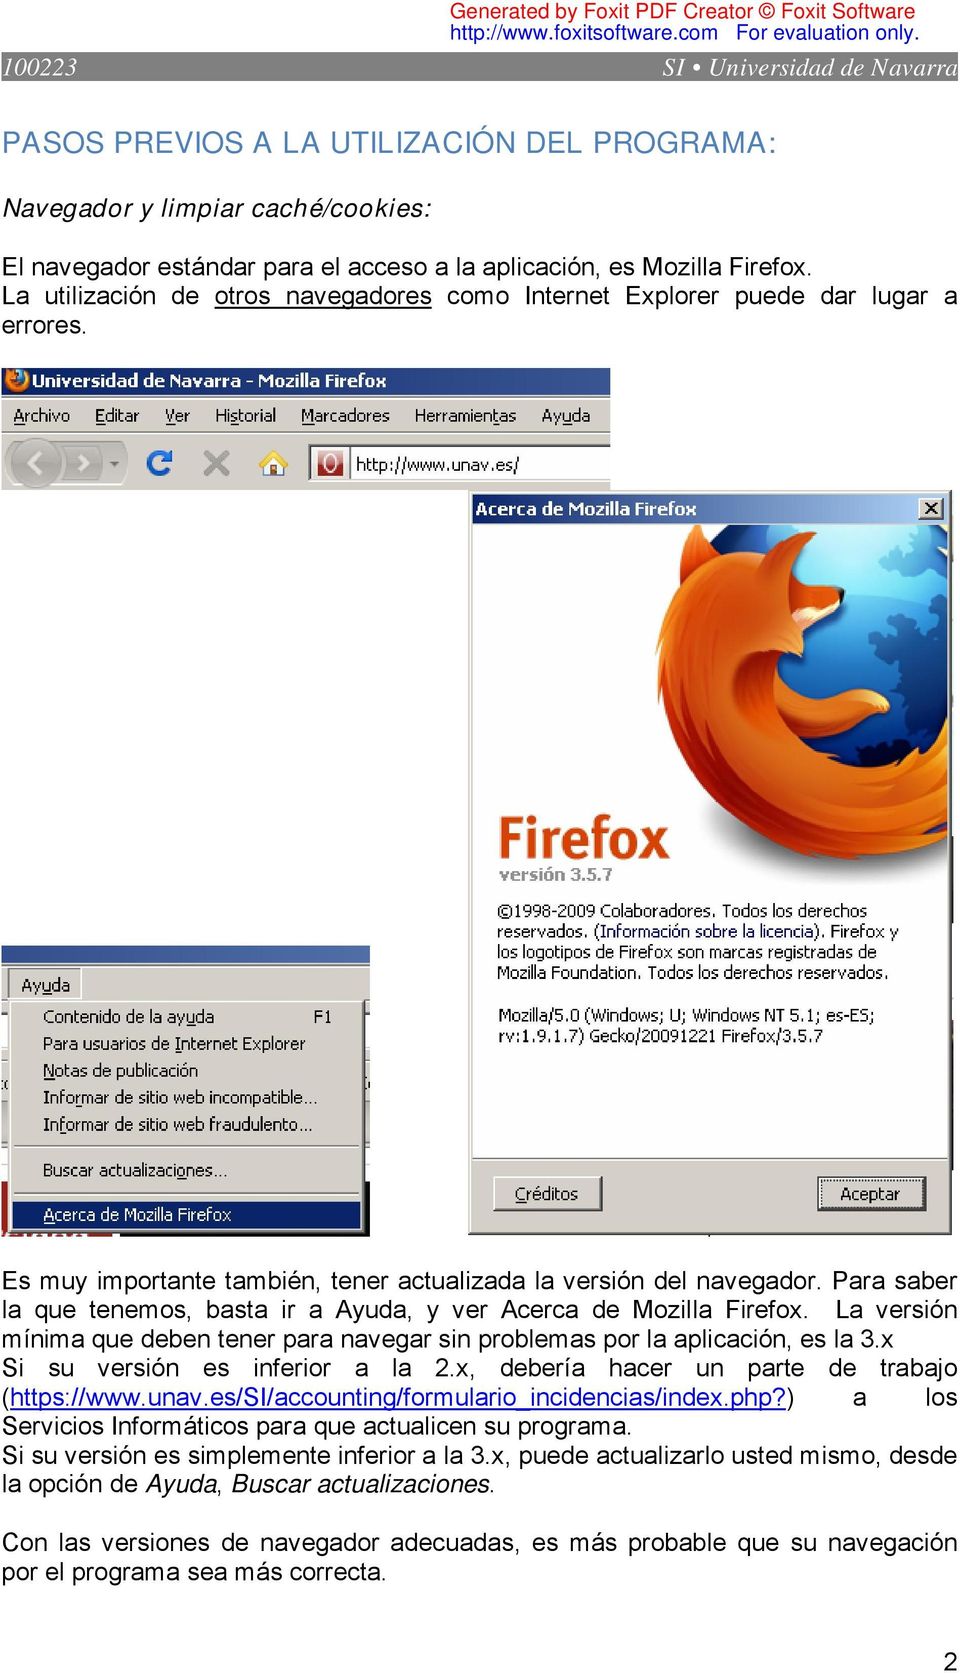 Para saber la que tenemos, basta ir a Ayuda, y ver Acerca de Mozilla Firefox. La versión mínima que deben tener para navegar sin problemas por la aplicación, es la 3.